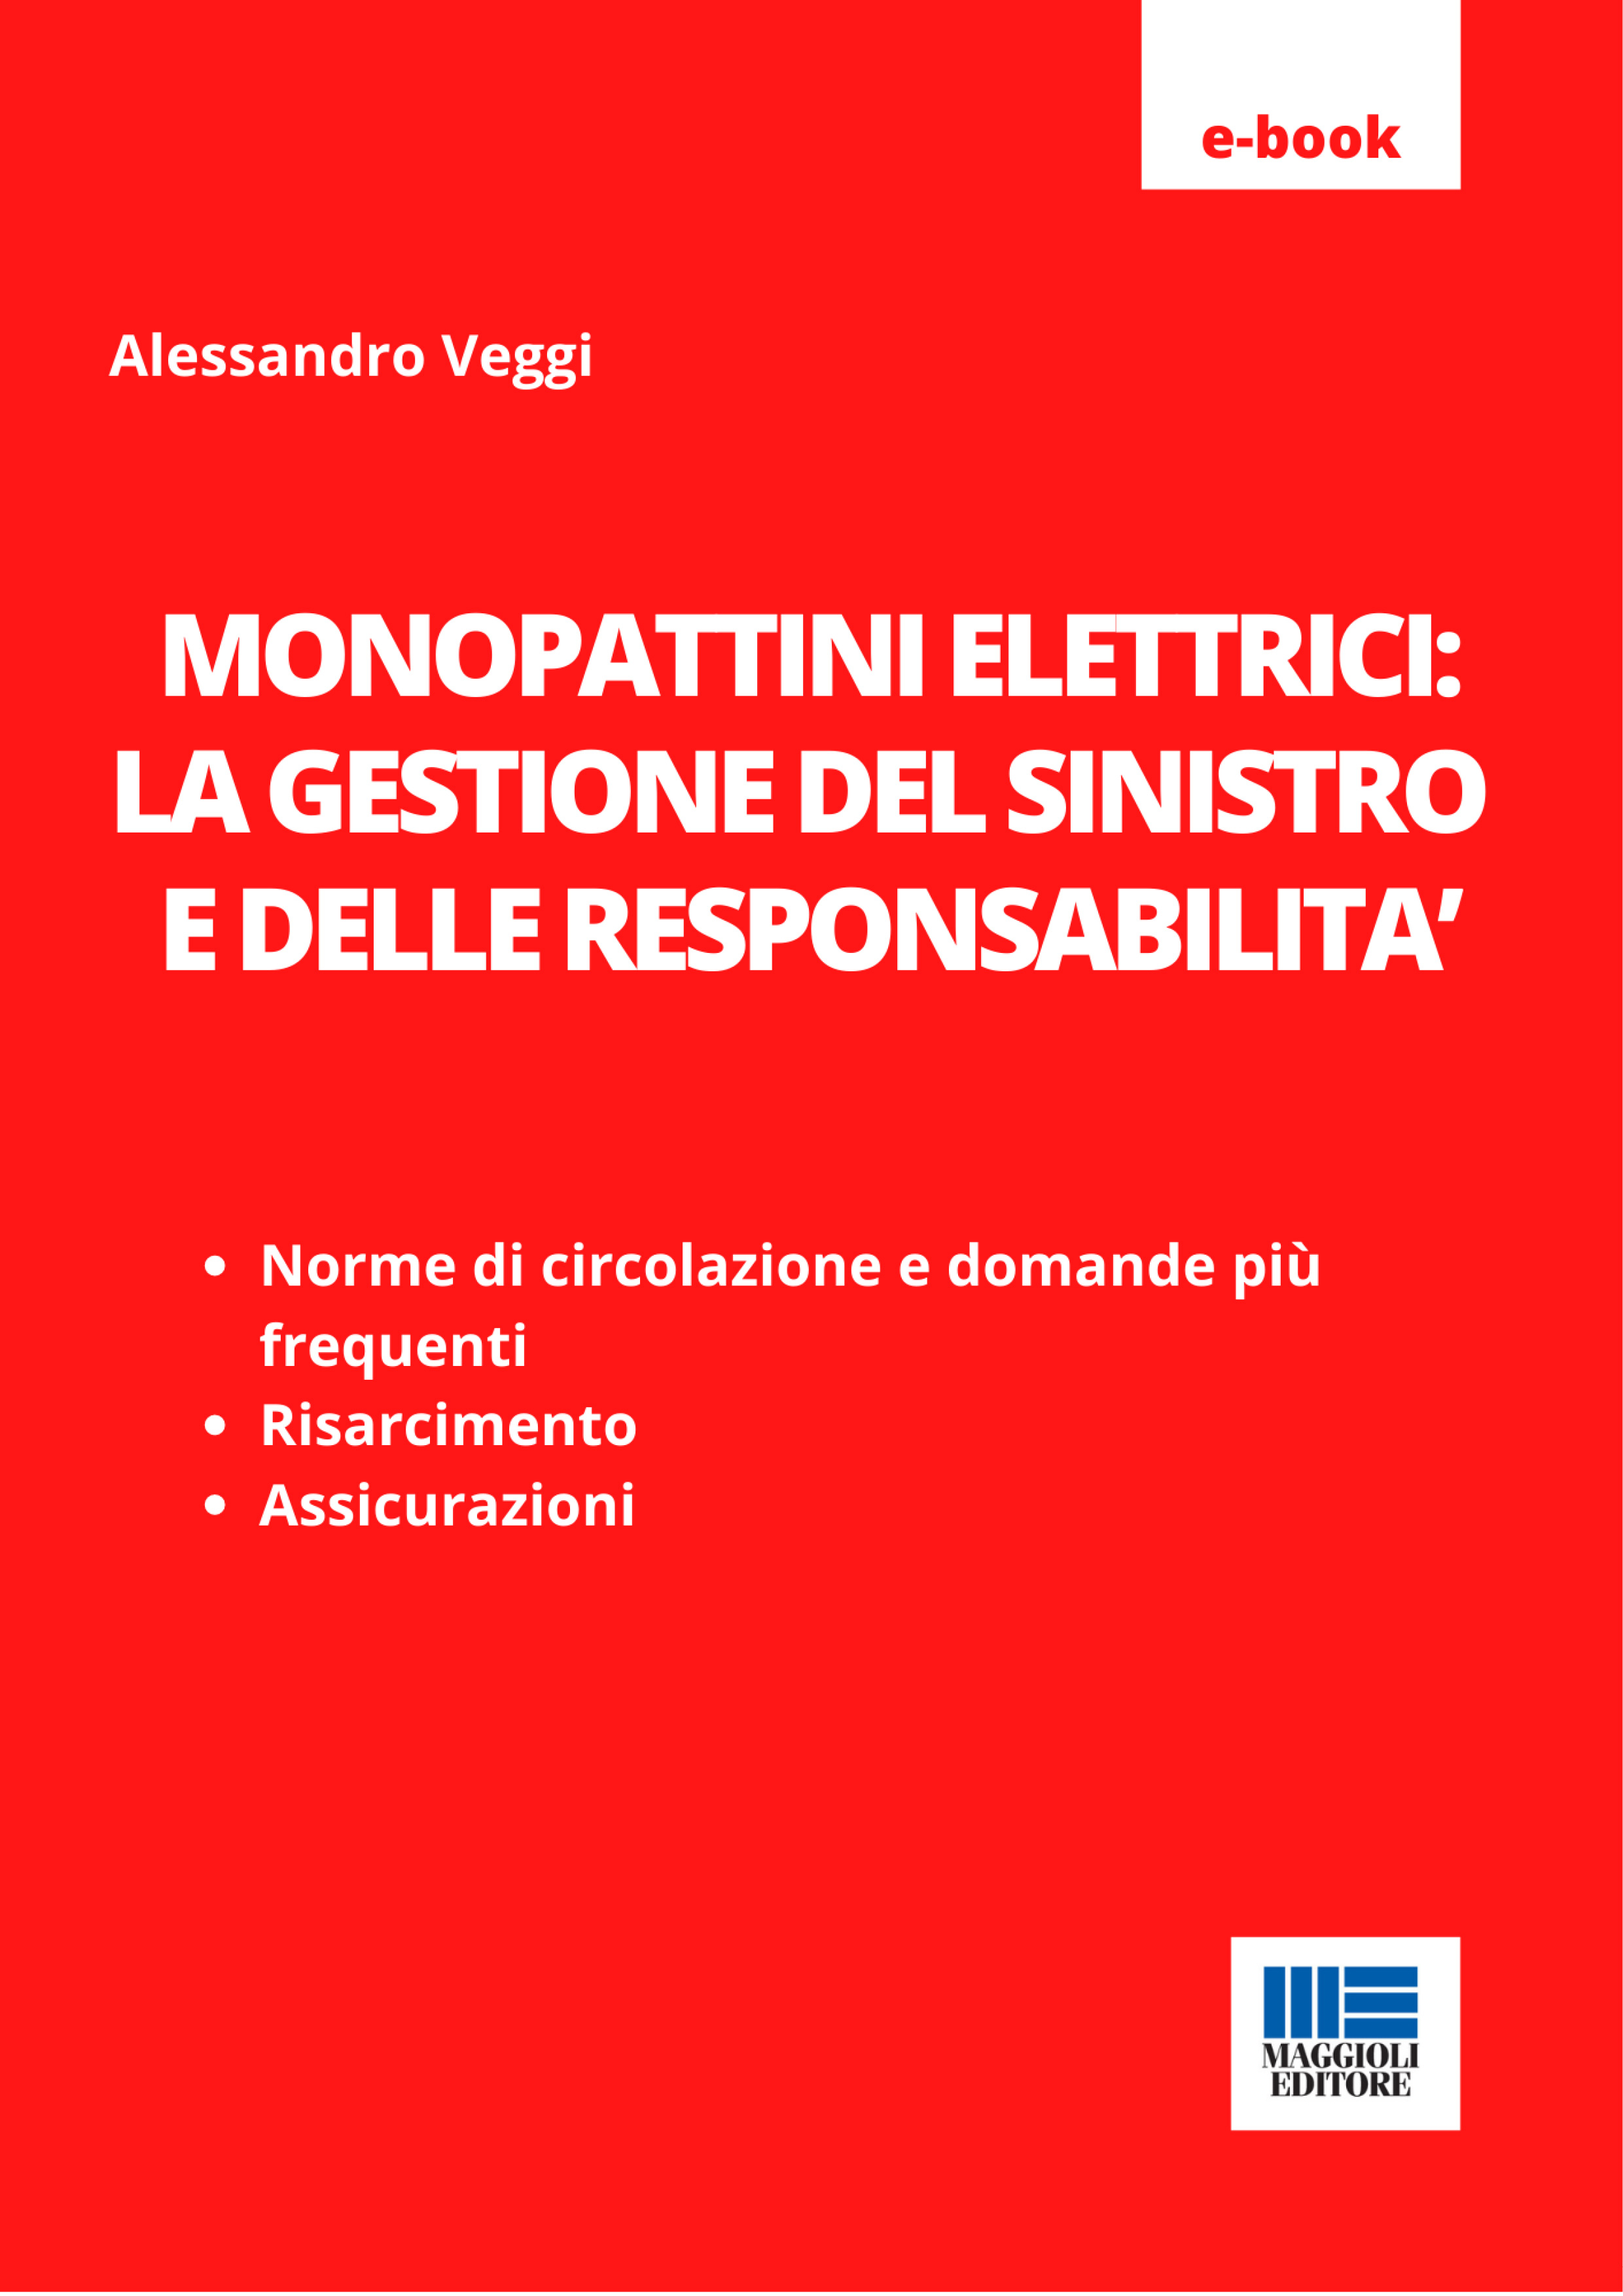 Monopattini elettrici: la gestione del sinistro e delle responsabilitÃ  - e-Book in pdf